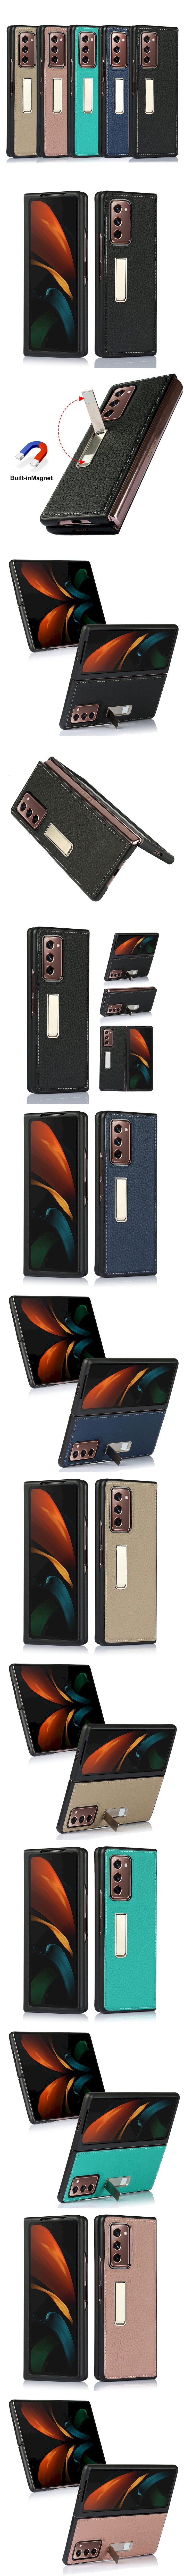 Samsung Galaxy Z Fold 2 5G 皮革保護殼(PLAIN) - 真皮荔枝紋折疊手機殼手機套保護套背蓋支架皮套保護殼